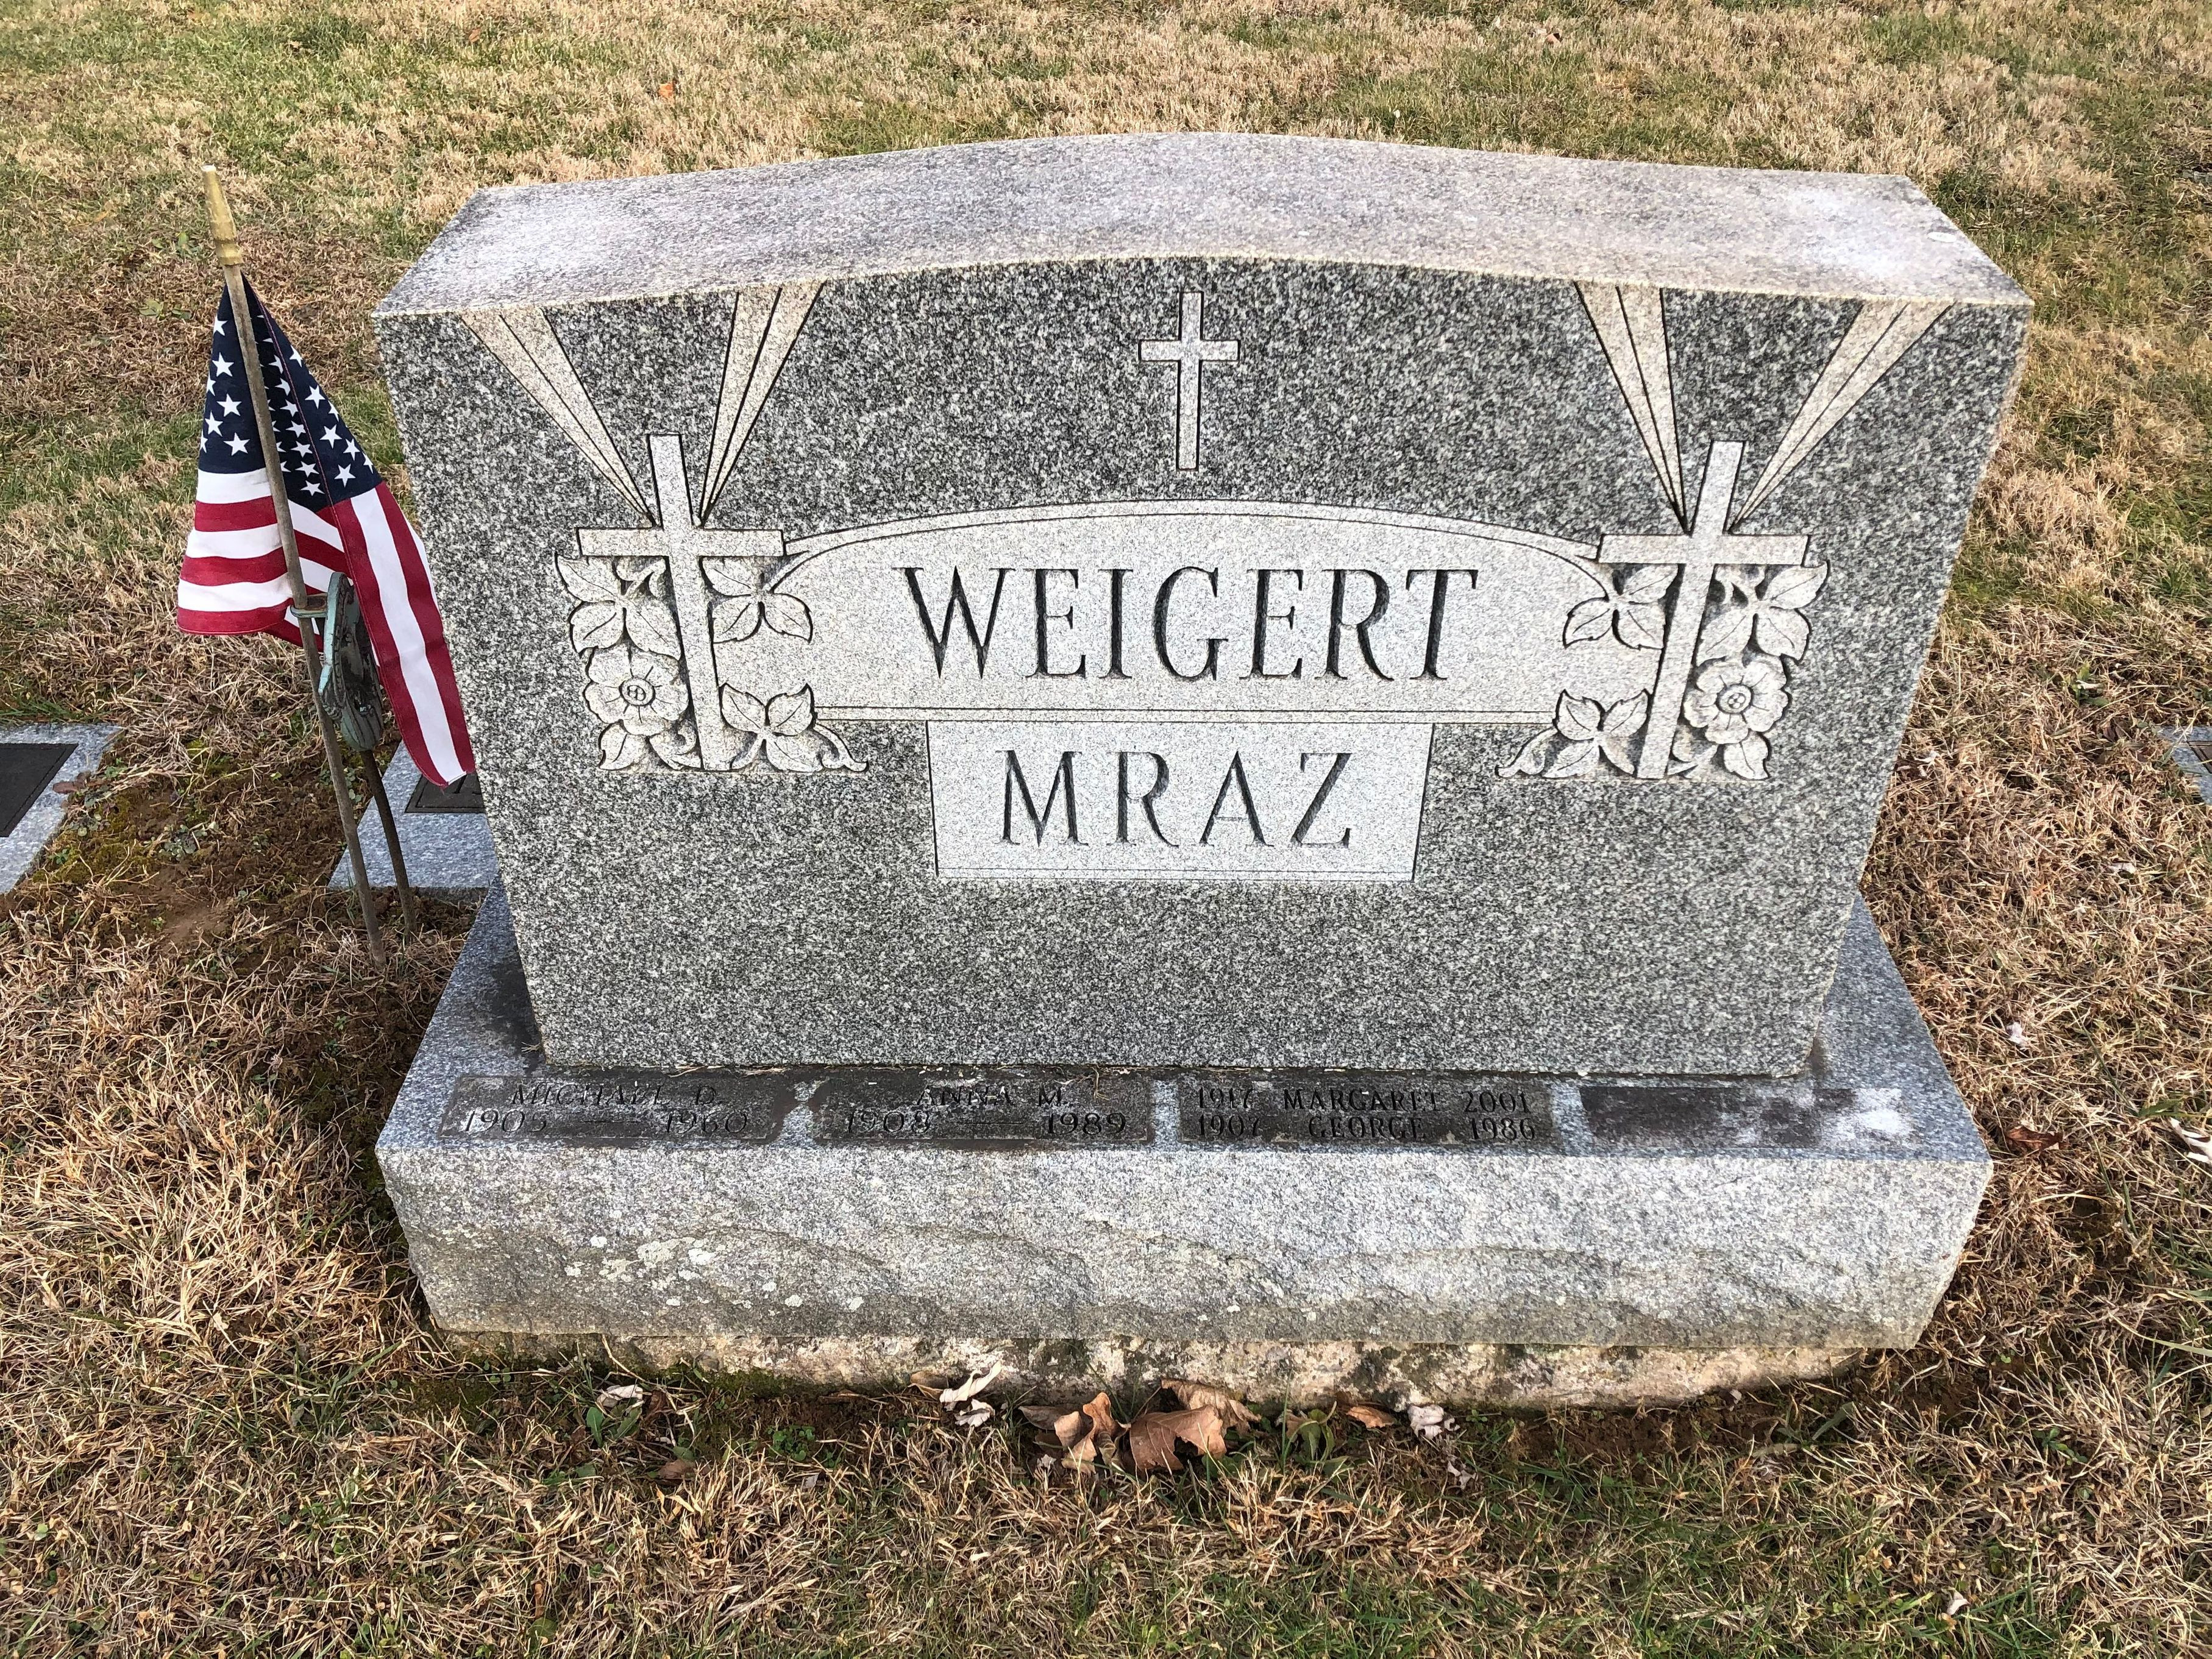 Anna M Mraz Weigert Gravesite